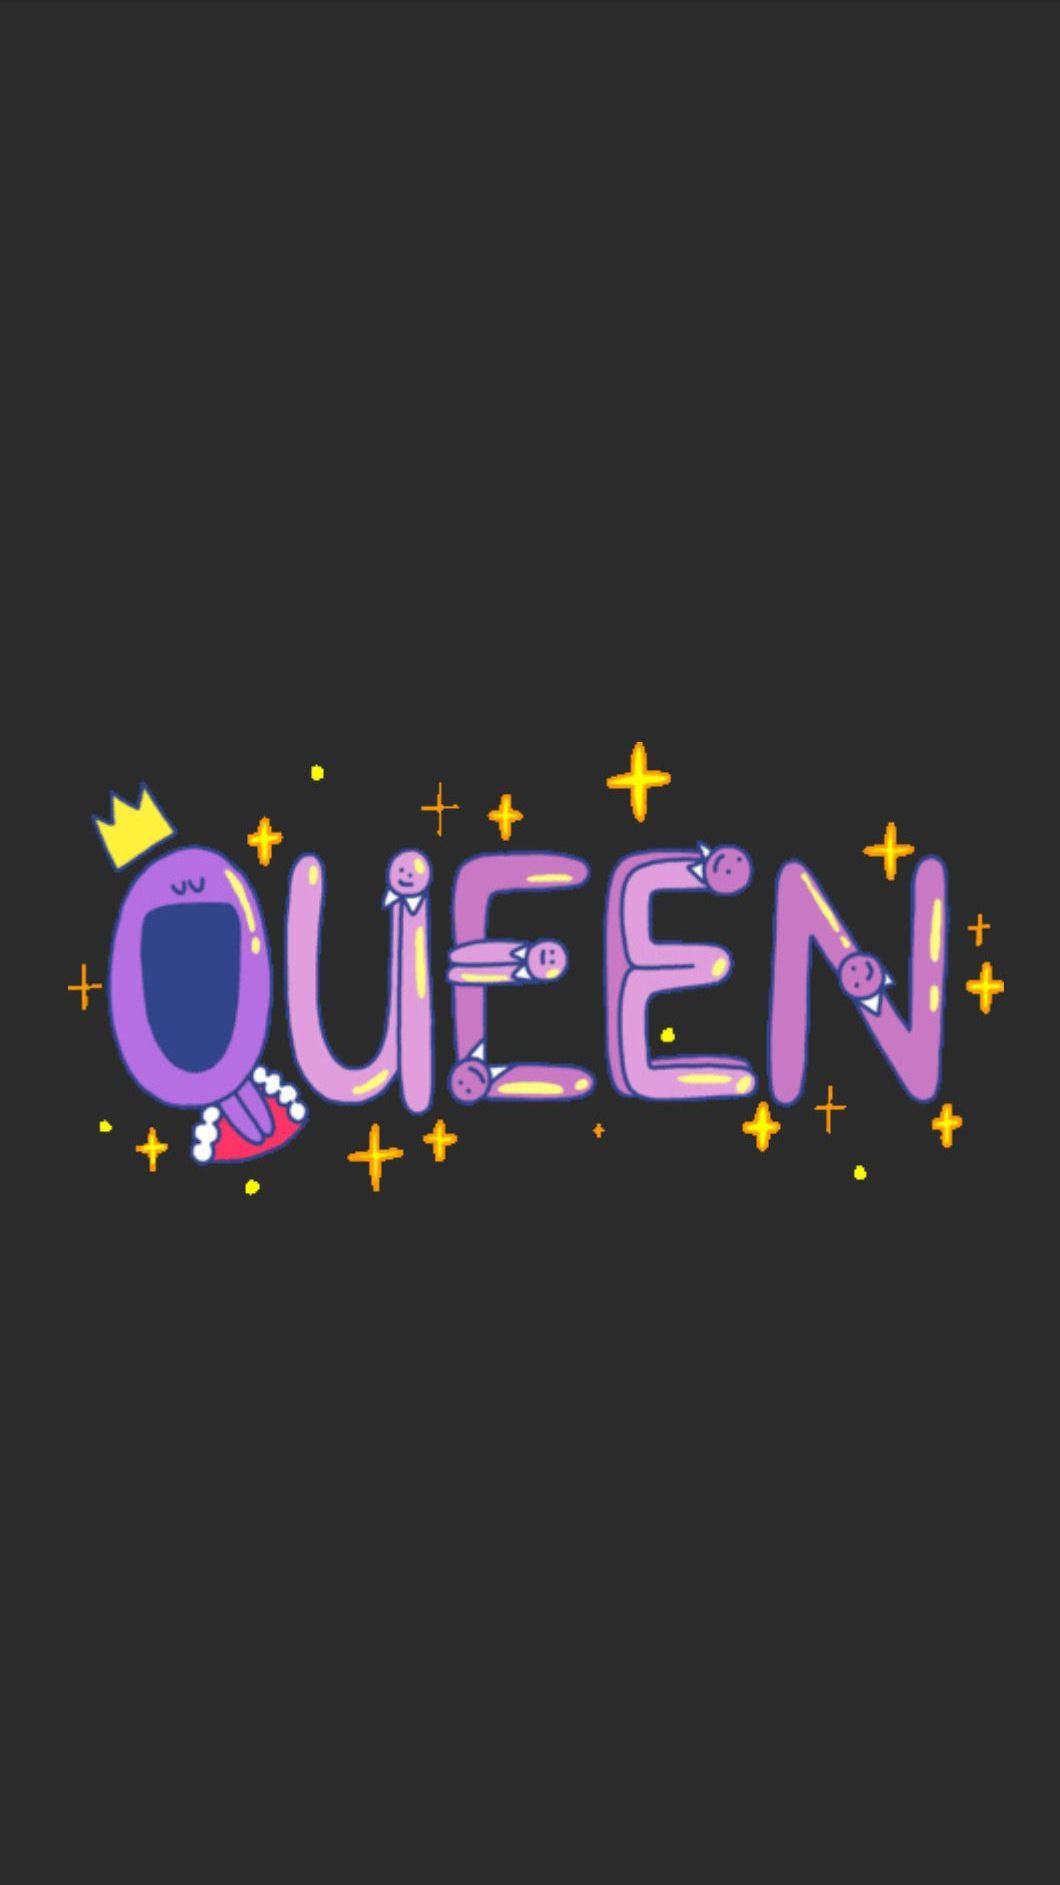 Queen iPhone Wallpaper. Black wallpaper iphone, Queens wallpaper, iPhone wallpaper queen